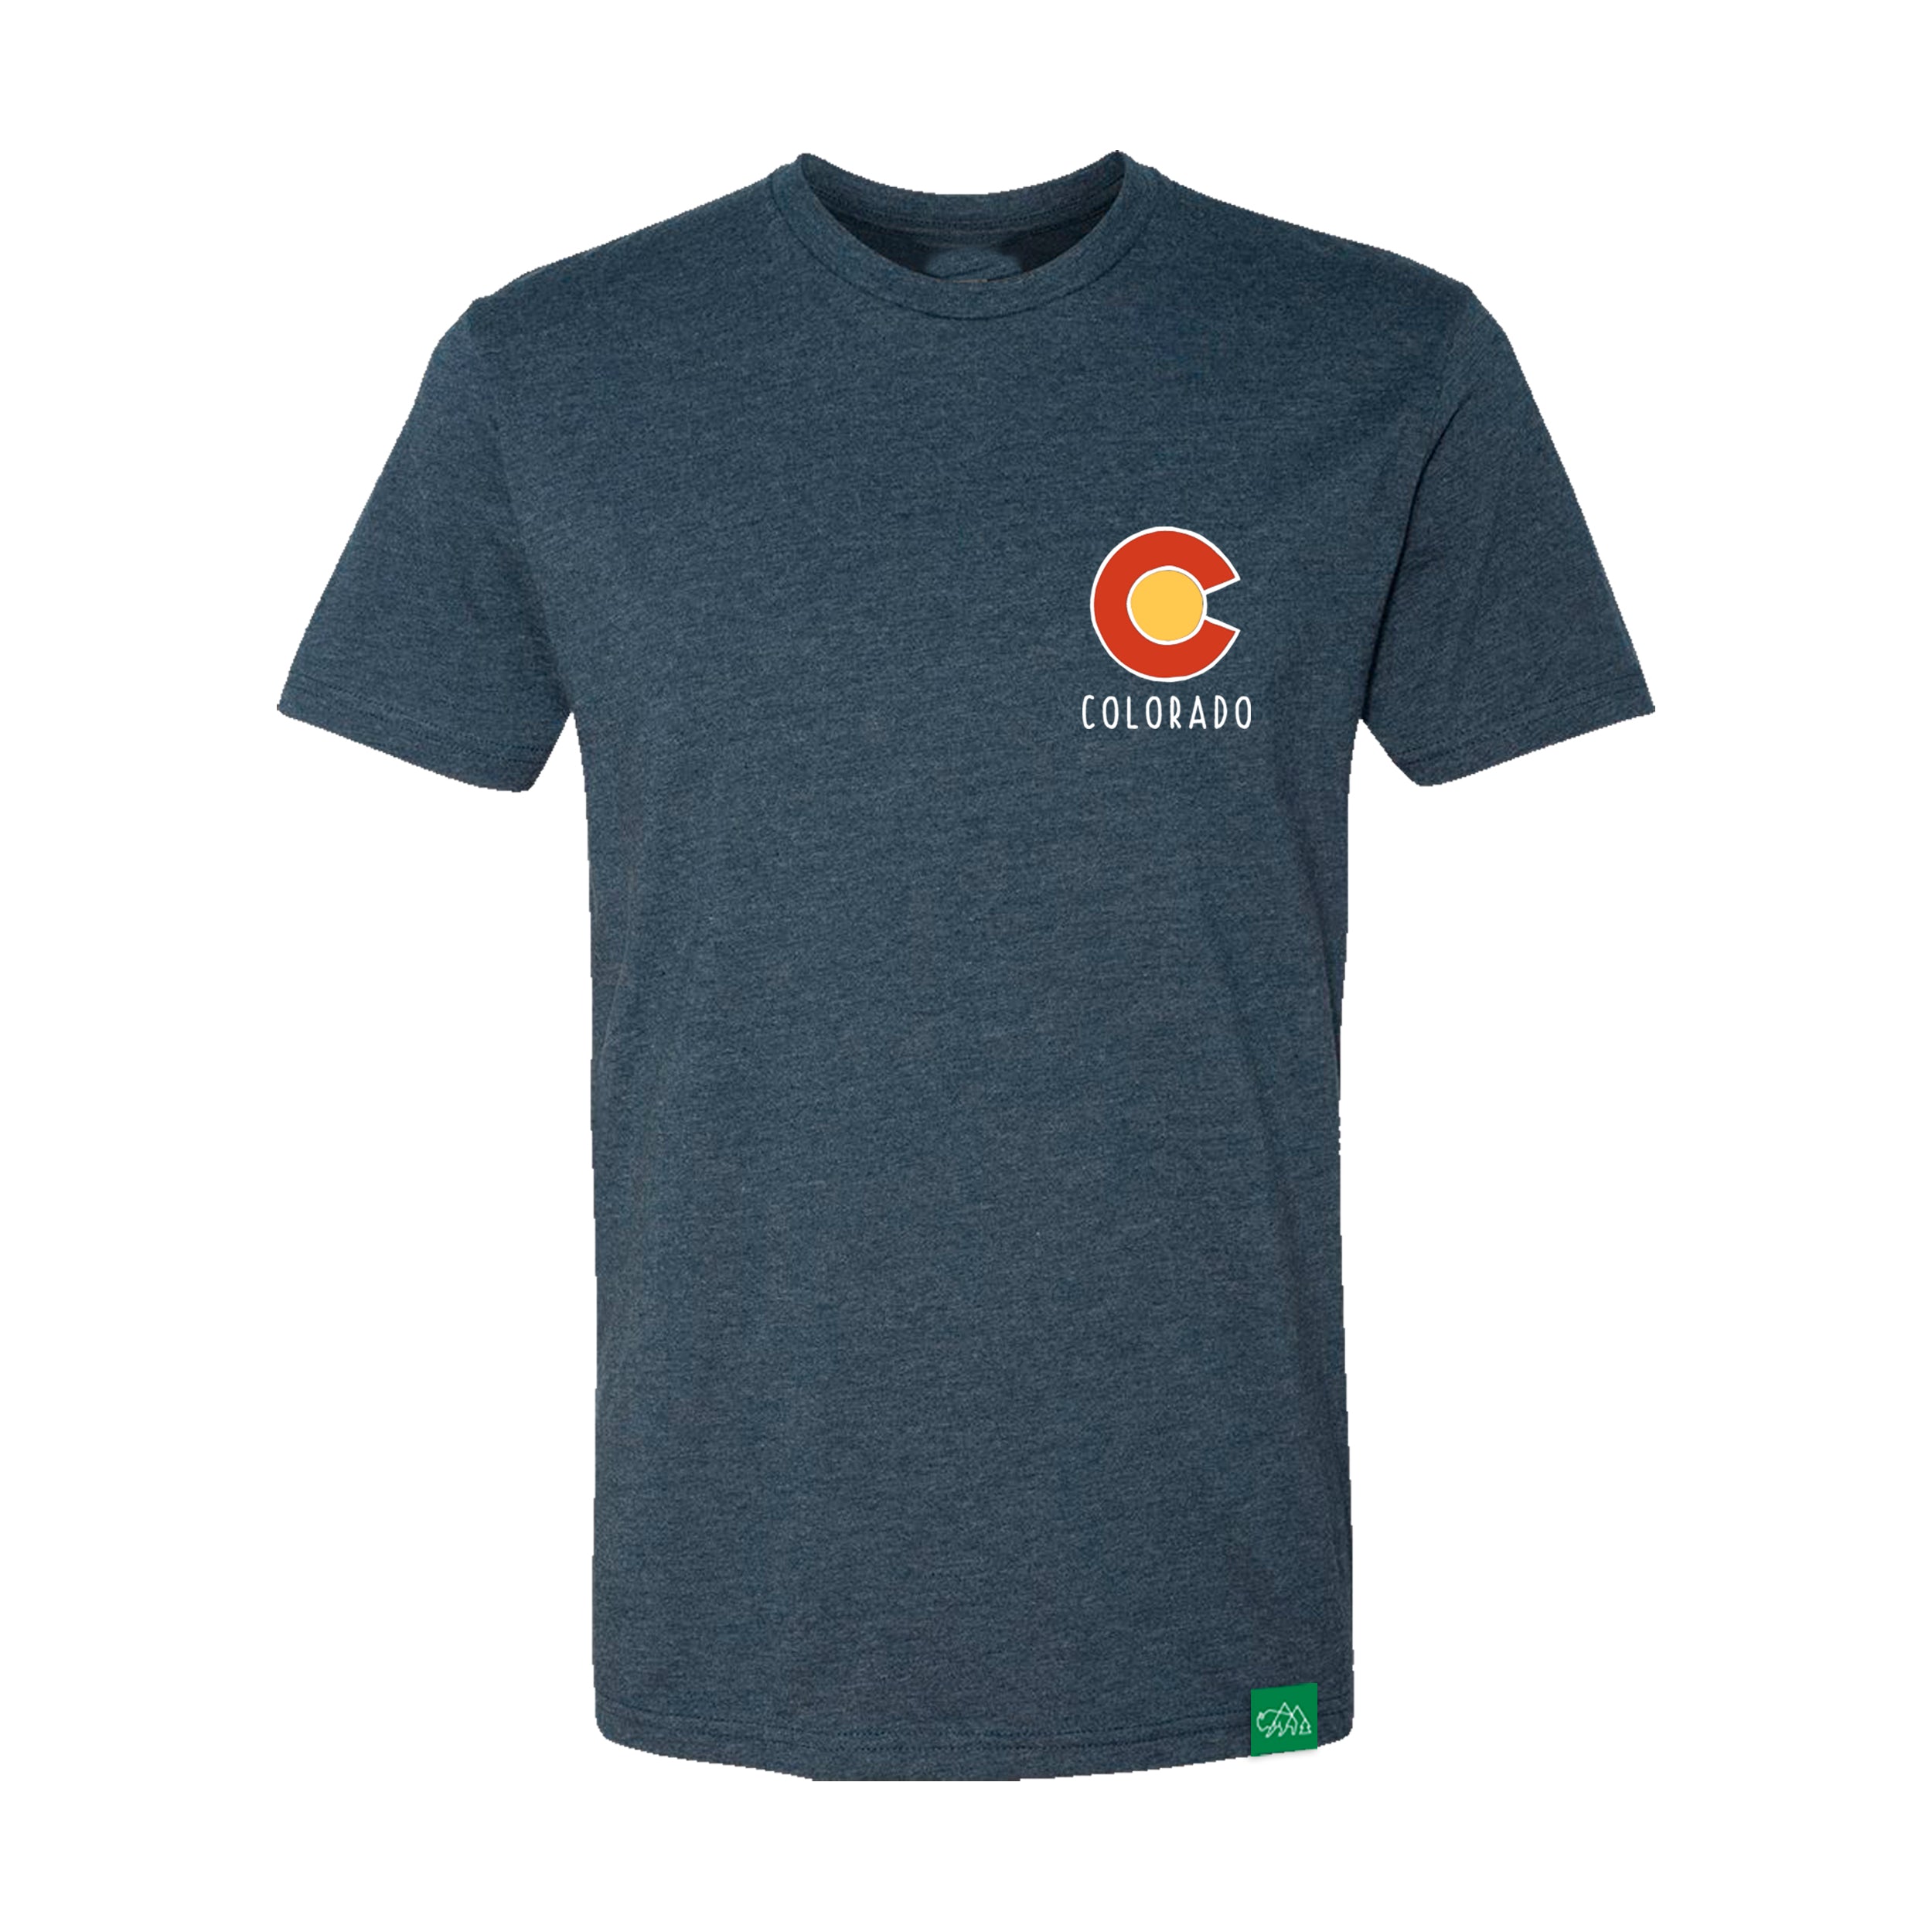 Colorado Topo Map T-Shirt